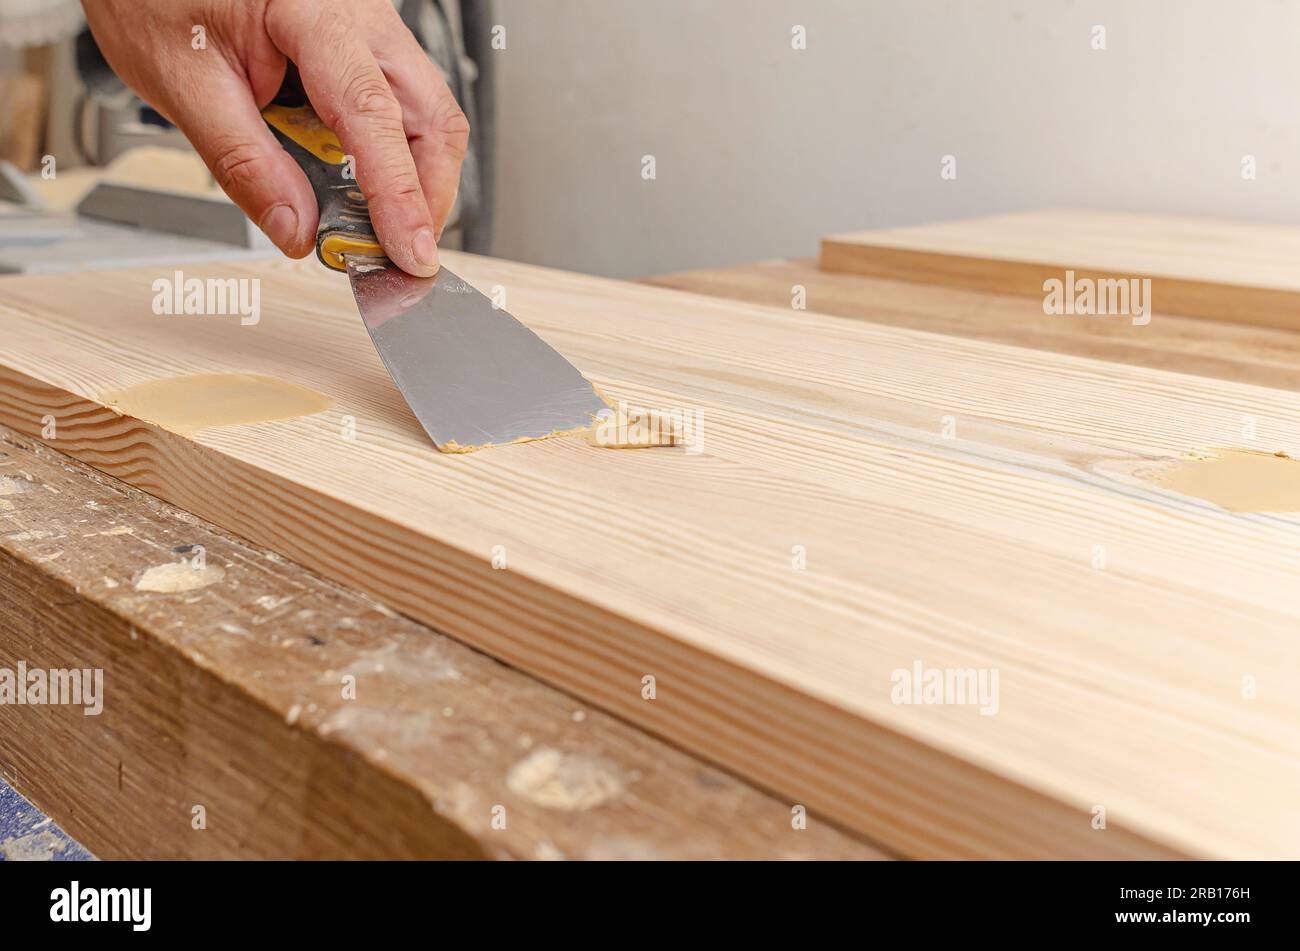 Couvrir les nœuds sur une planche de bois avec du mastic. Spatule, mastic, planche de bois. Les mains de Carpenter. Banque D'Images